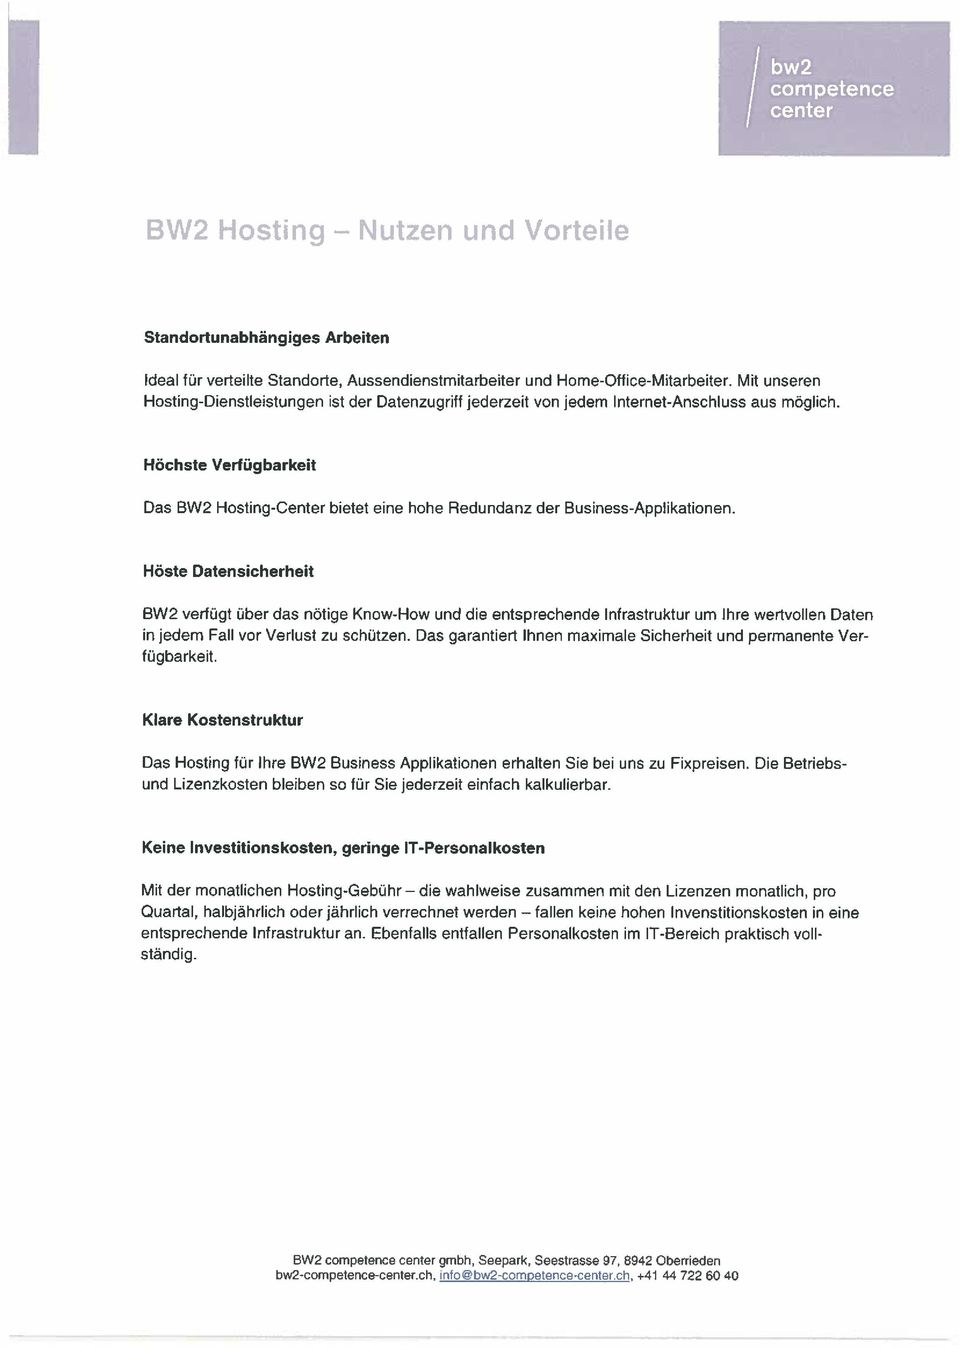 Höchste Verfügbarkeit Das BW2 Hosting-Center bietet eine hohe Redundanz der Business-Applikationen.